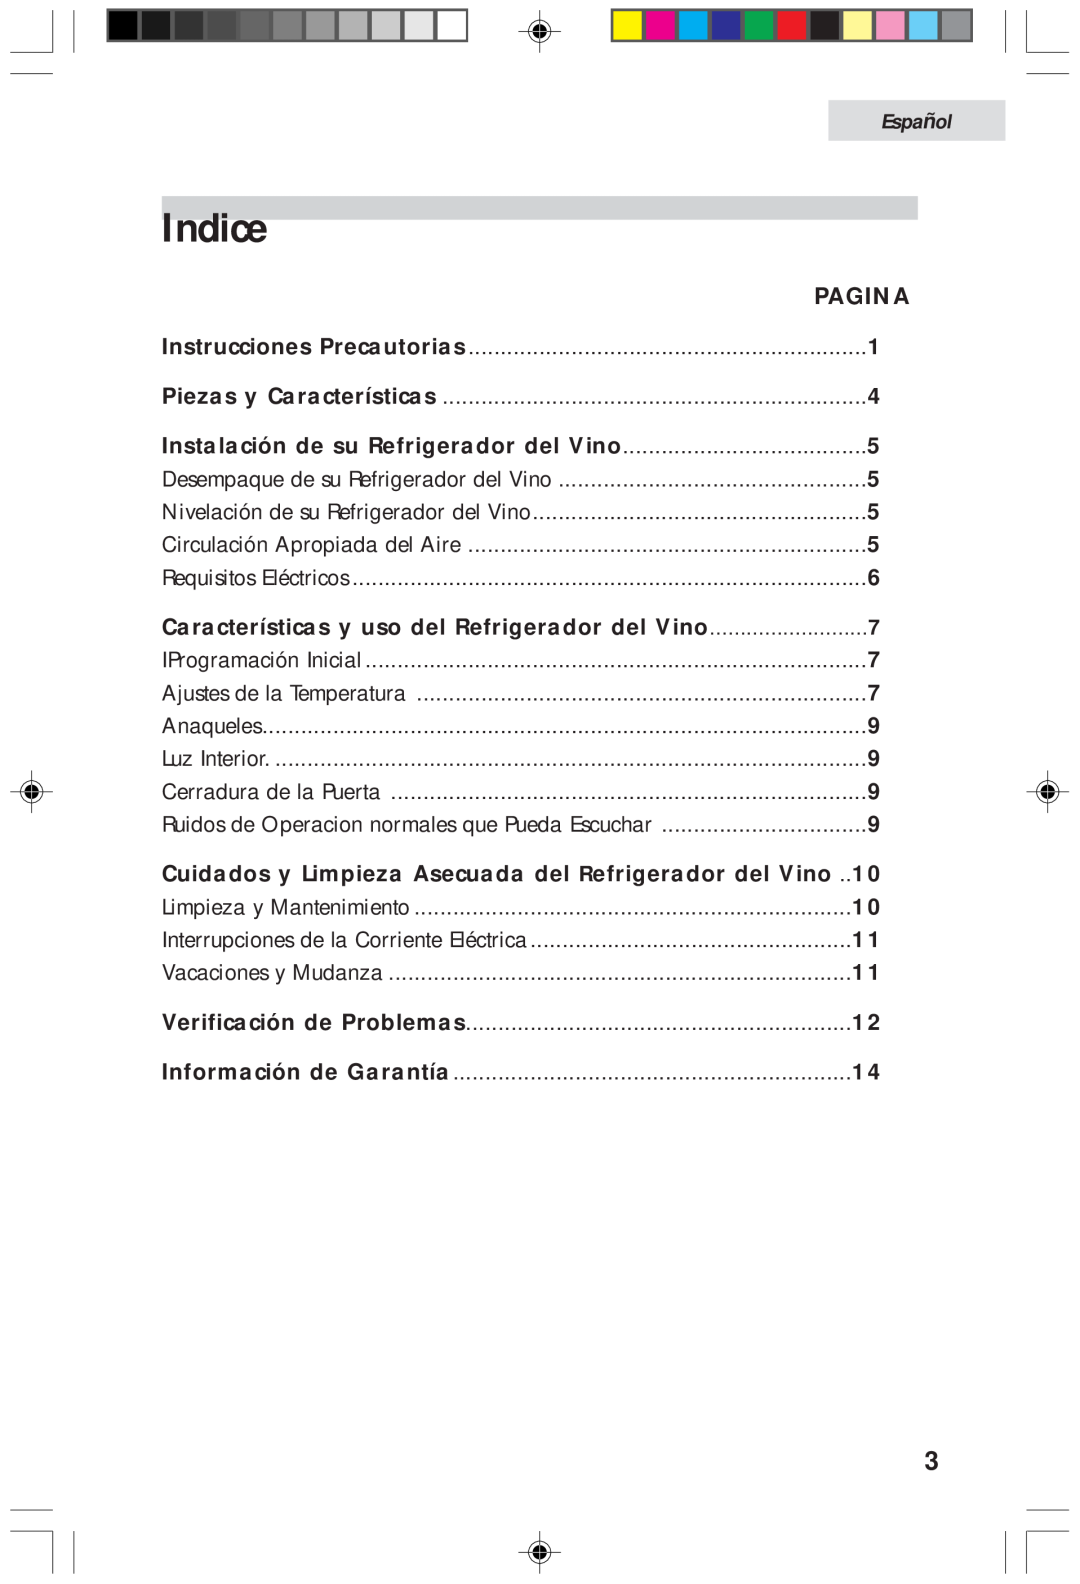 Haier HVFM20A, HVF020A user manual Indice, Pagina, Características y uso del Refrigerador del Vino, Español 